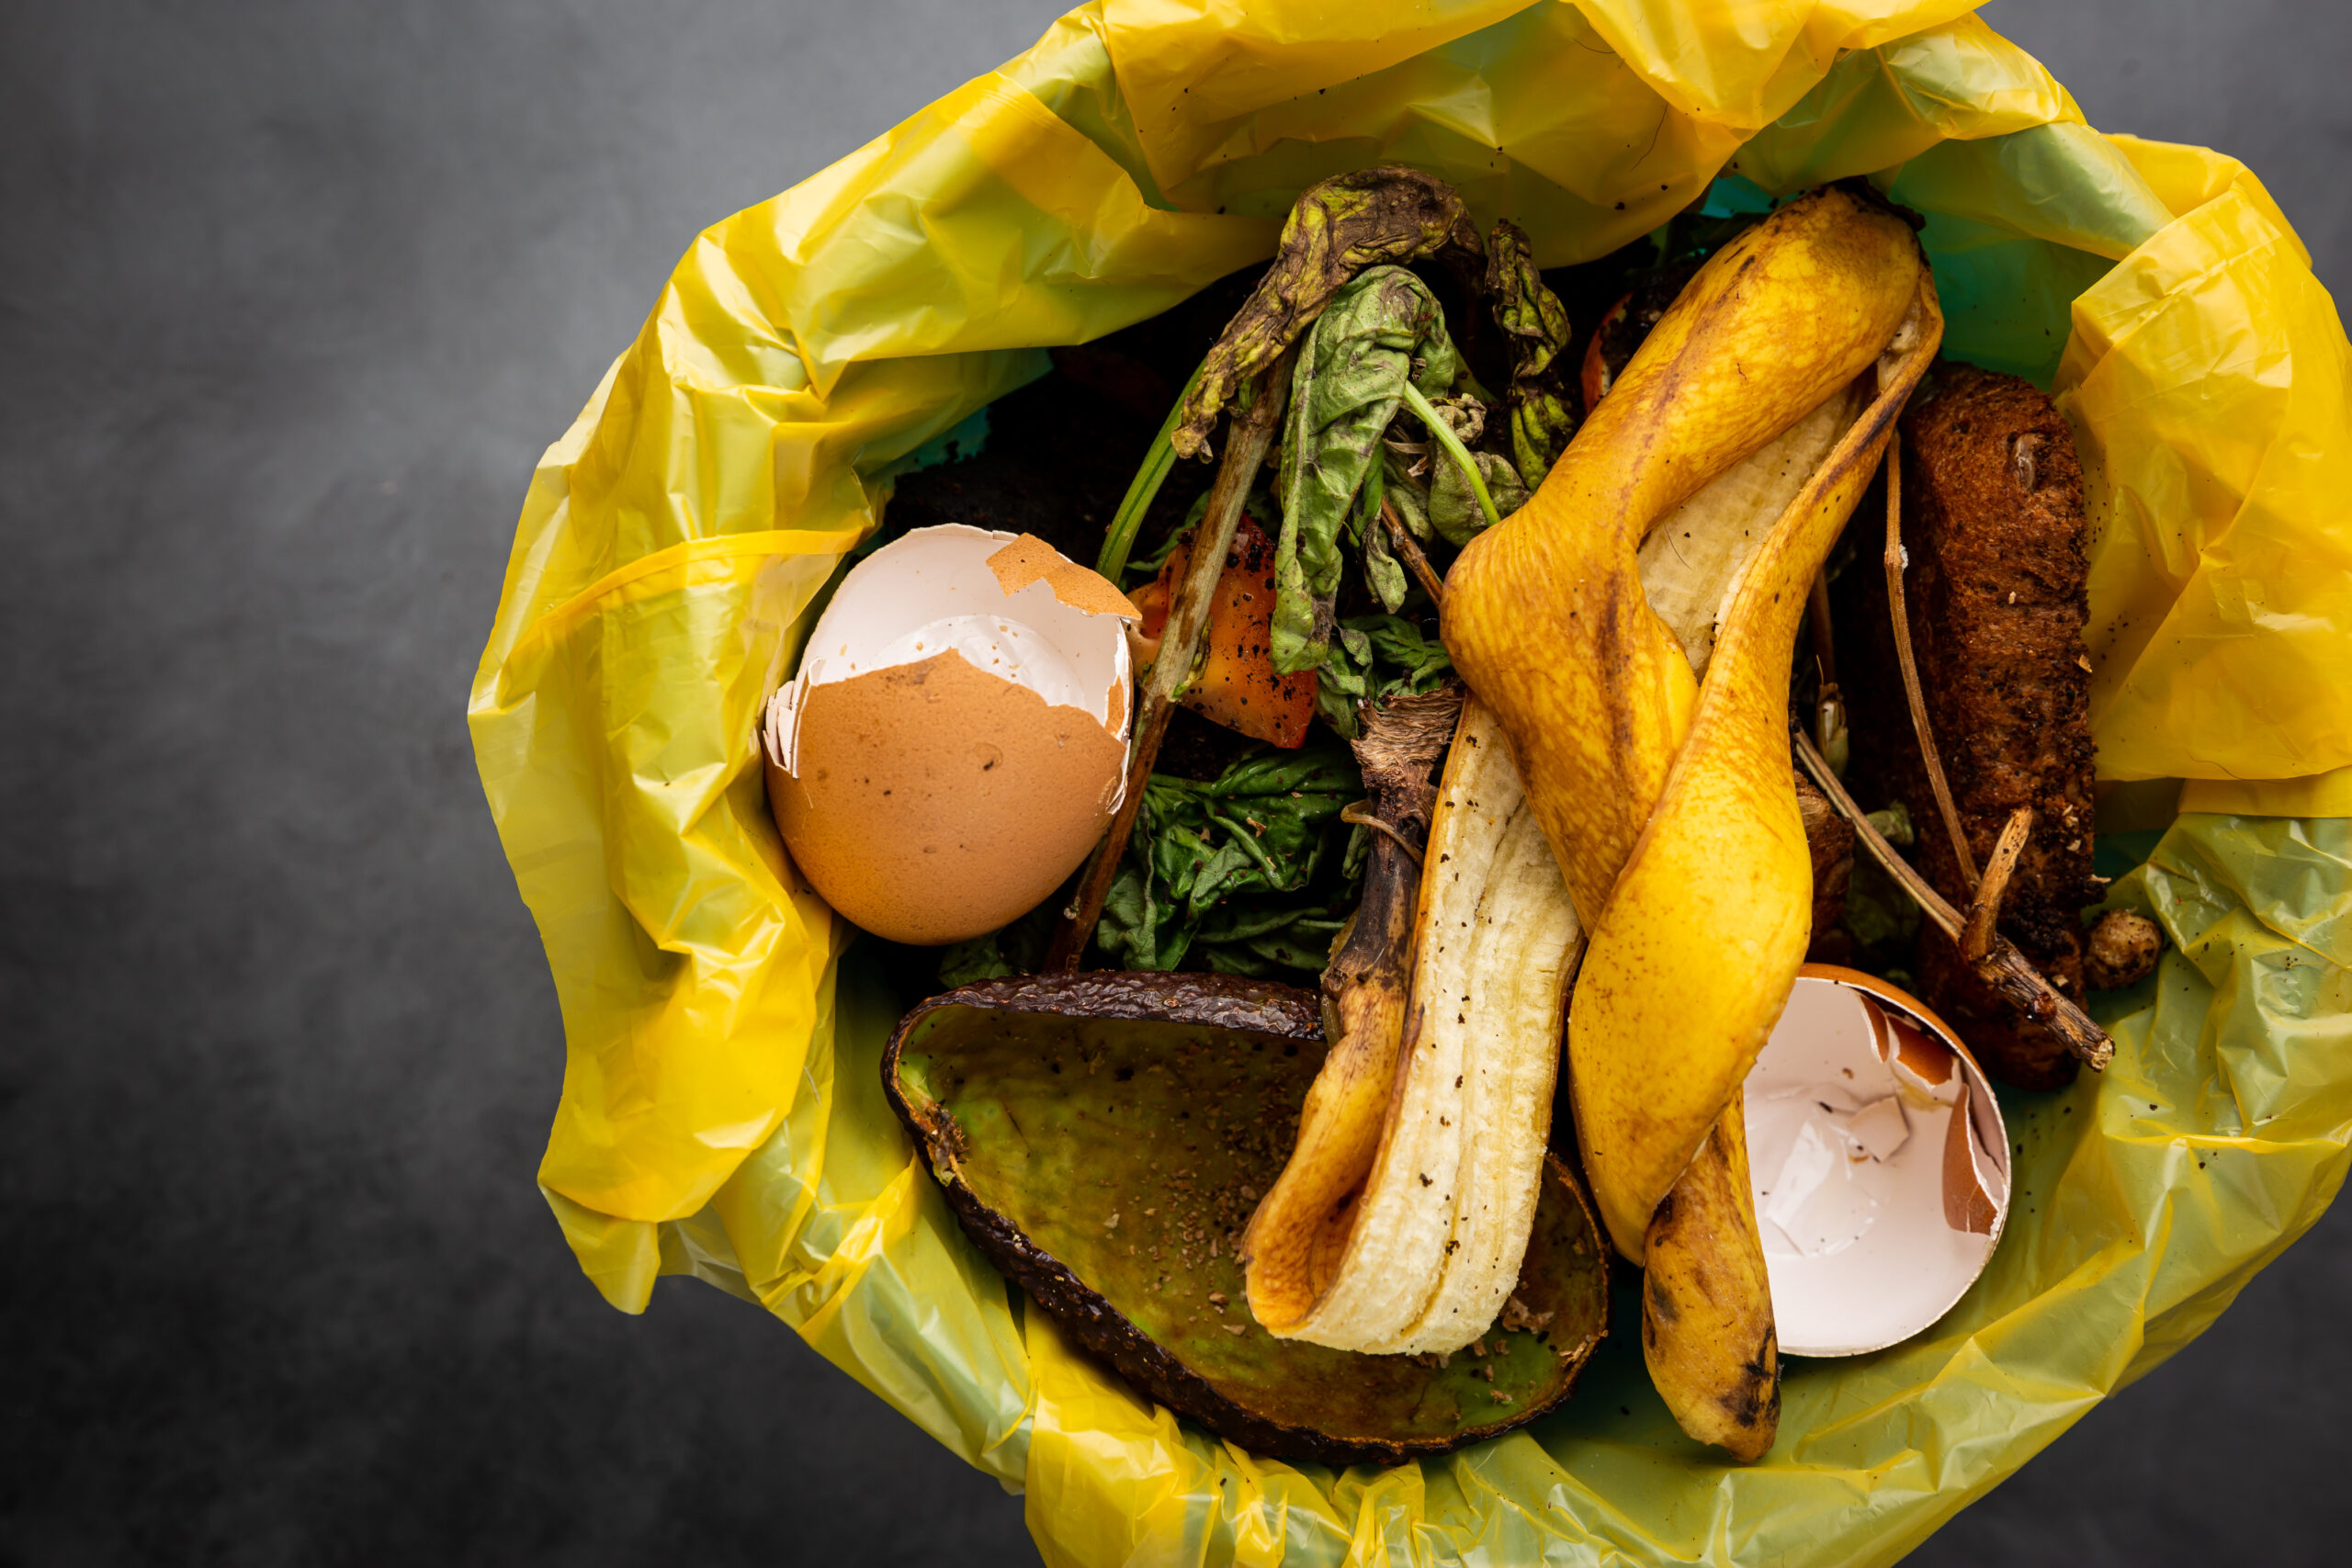 Organic food wastes